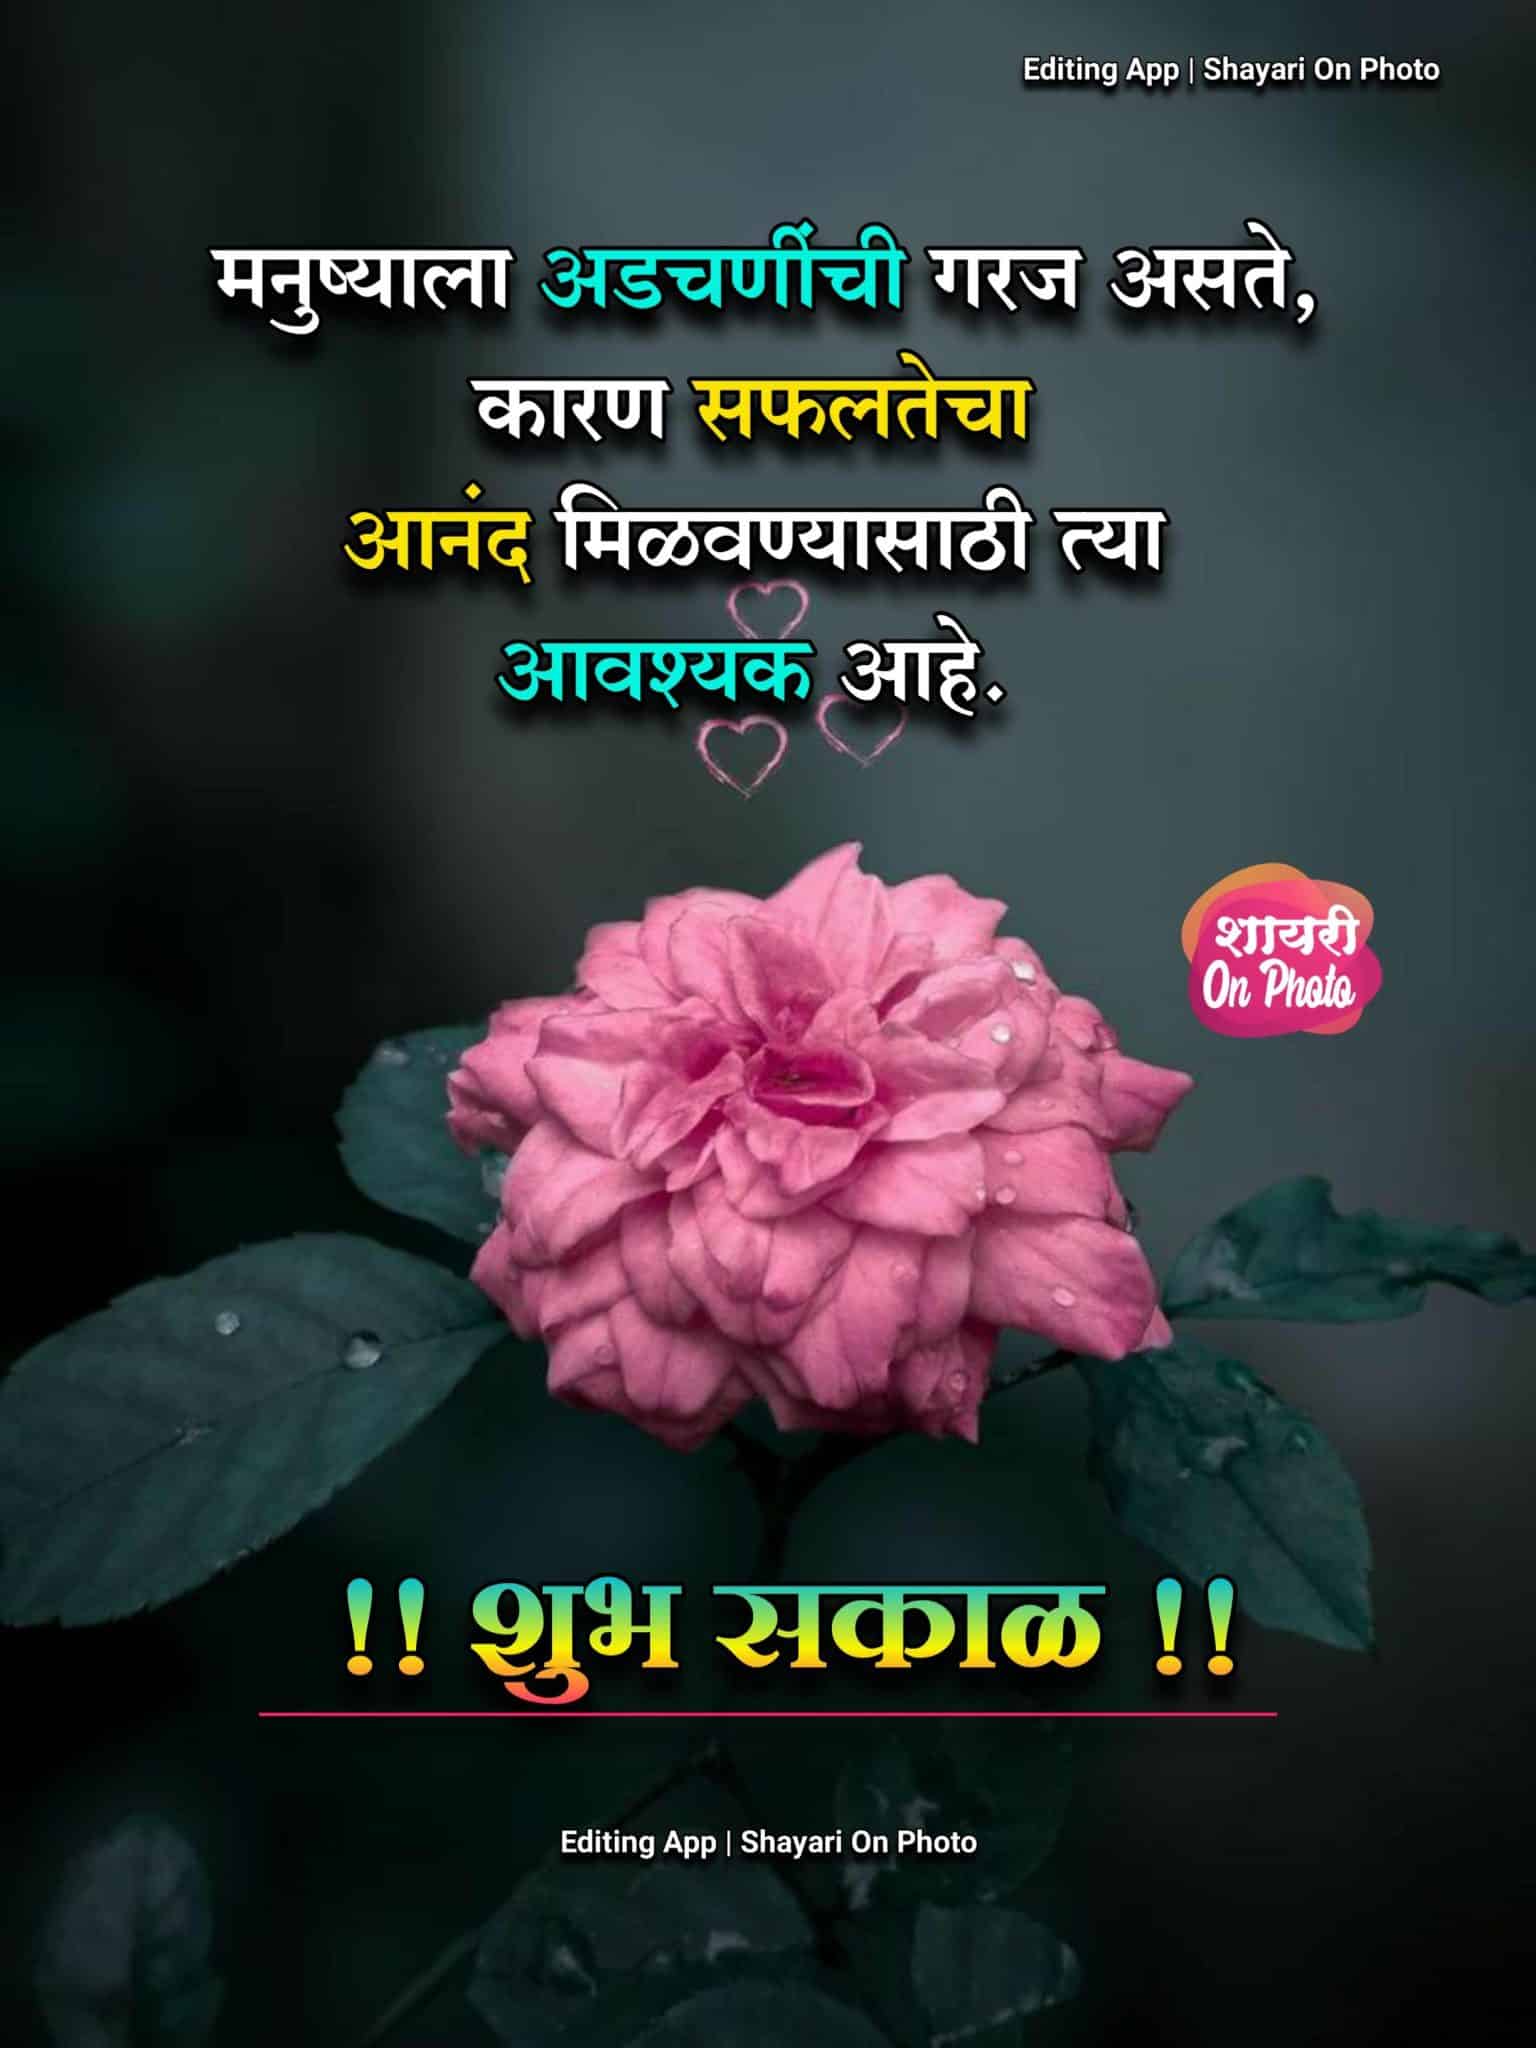 Motivational Good Morning Quotes Marathi